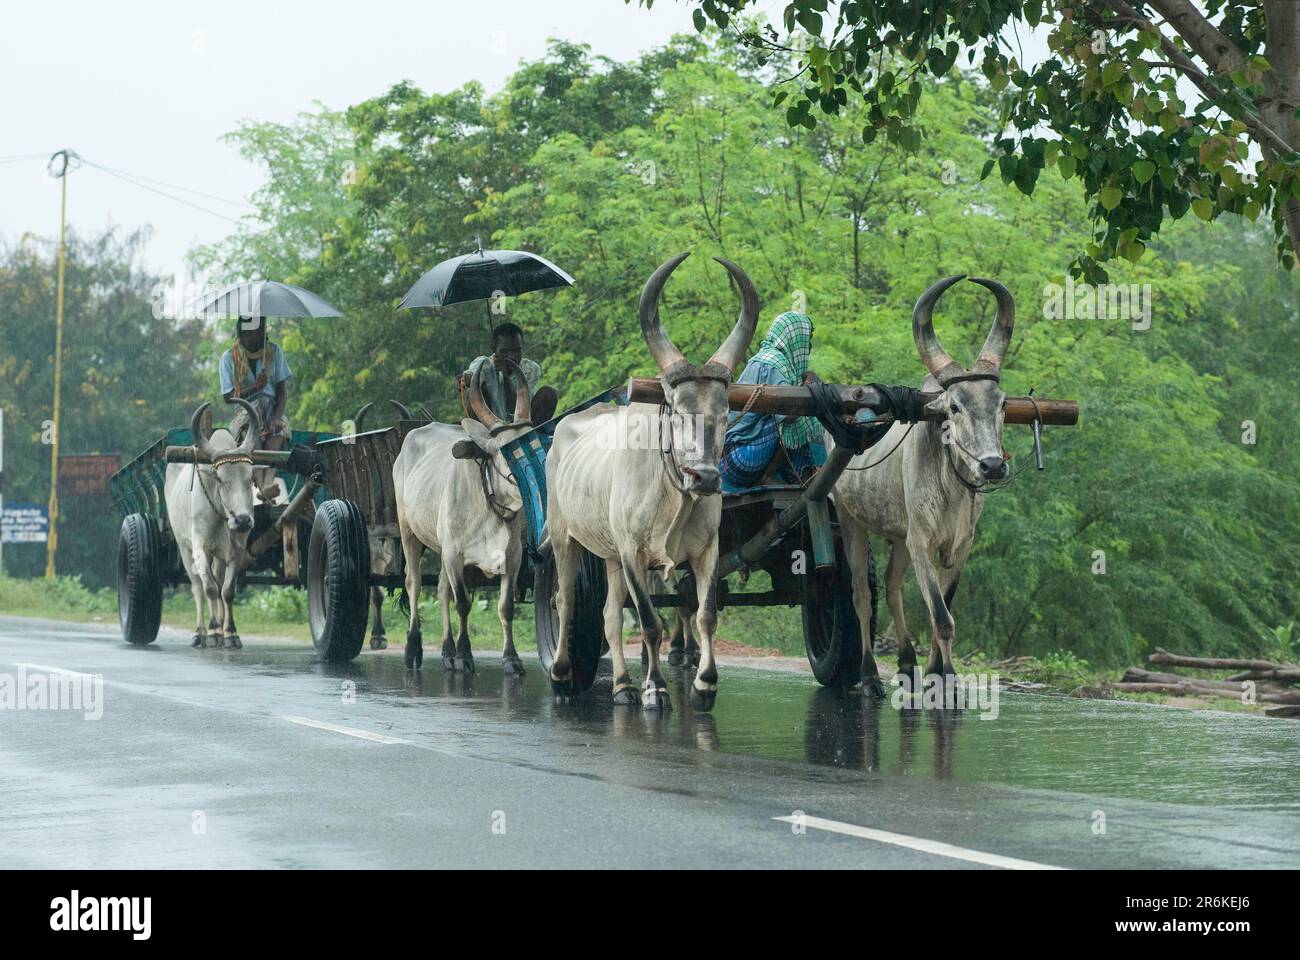 Bullock carts on a rainy day, Tamil Nadu, India, Asia Stock Photo